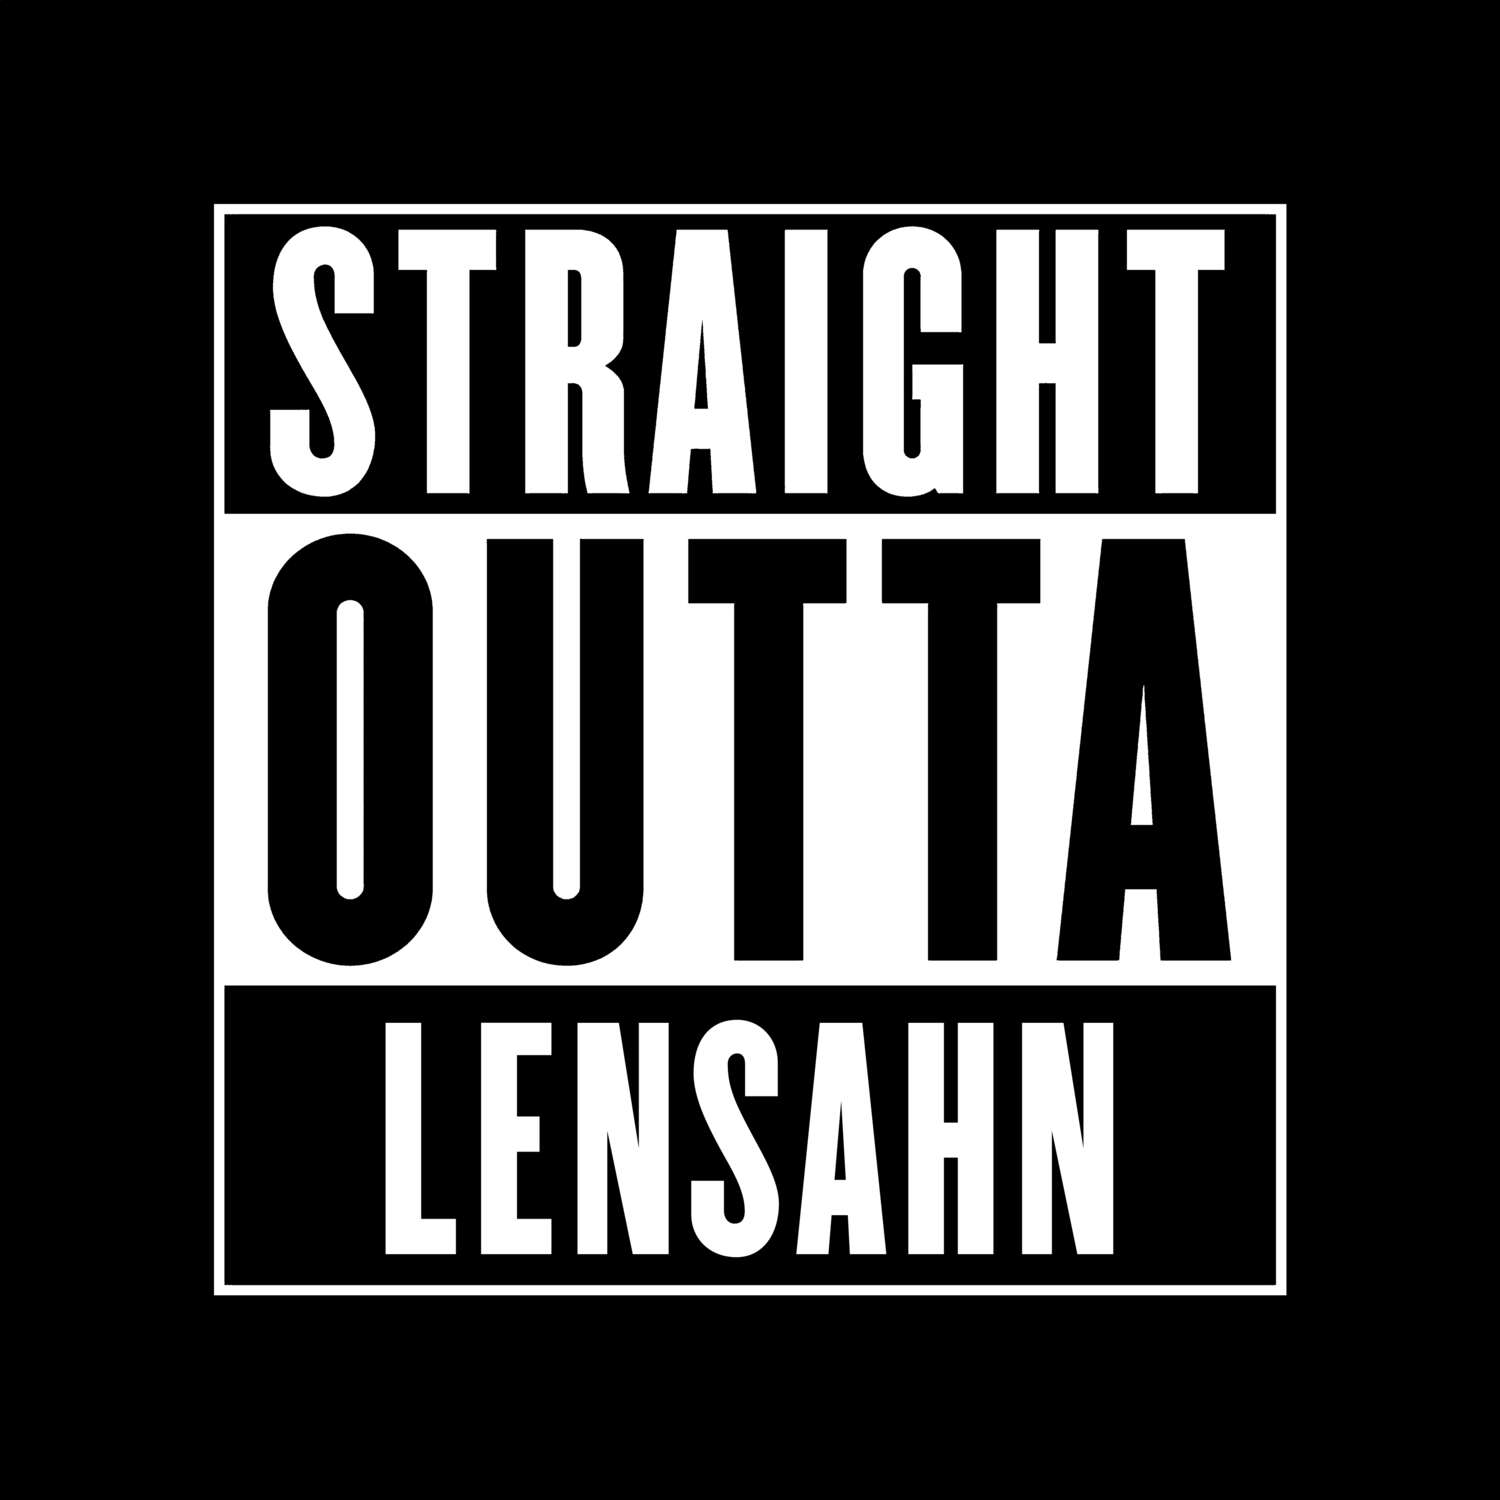 Lensahn T-Shirt »Straight Outta«